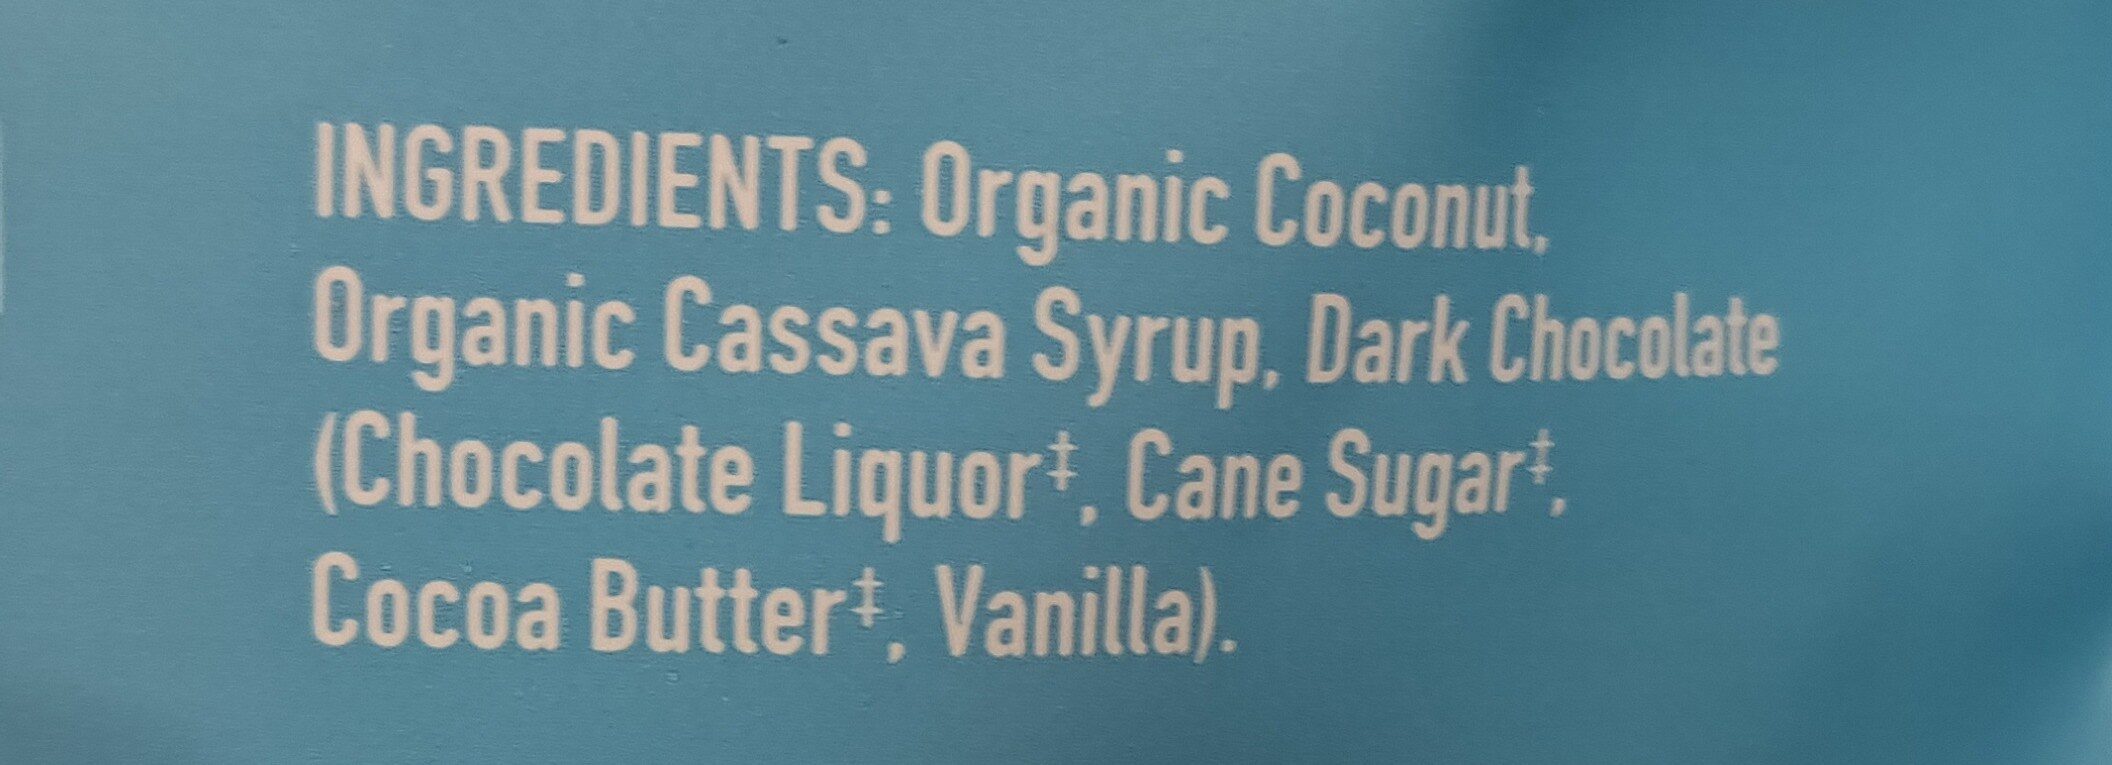 bars - Ingredients